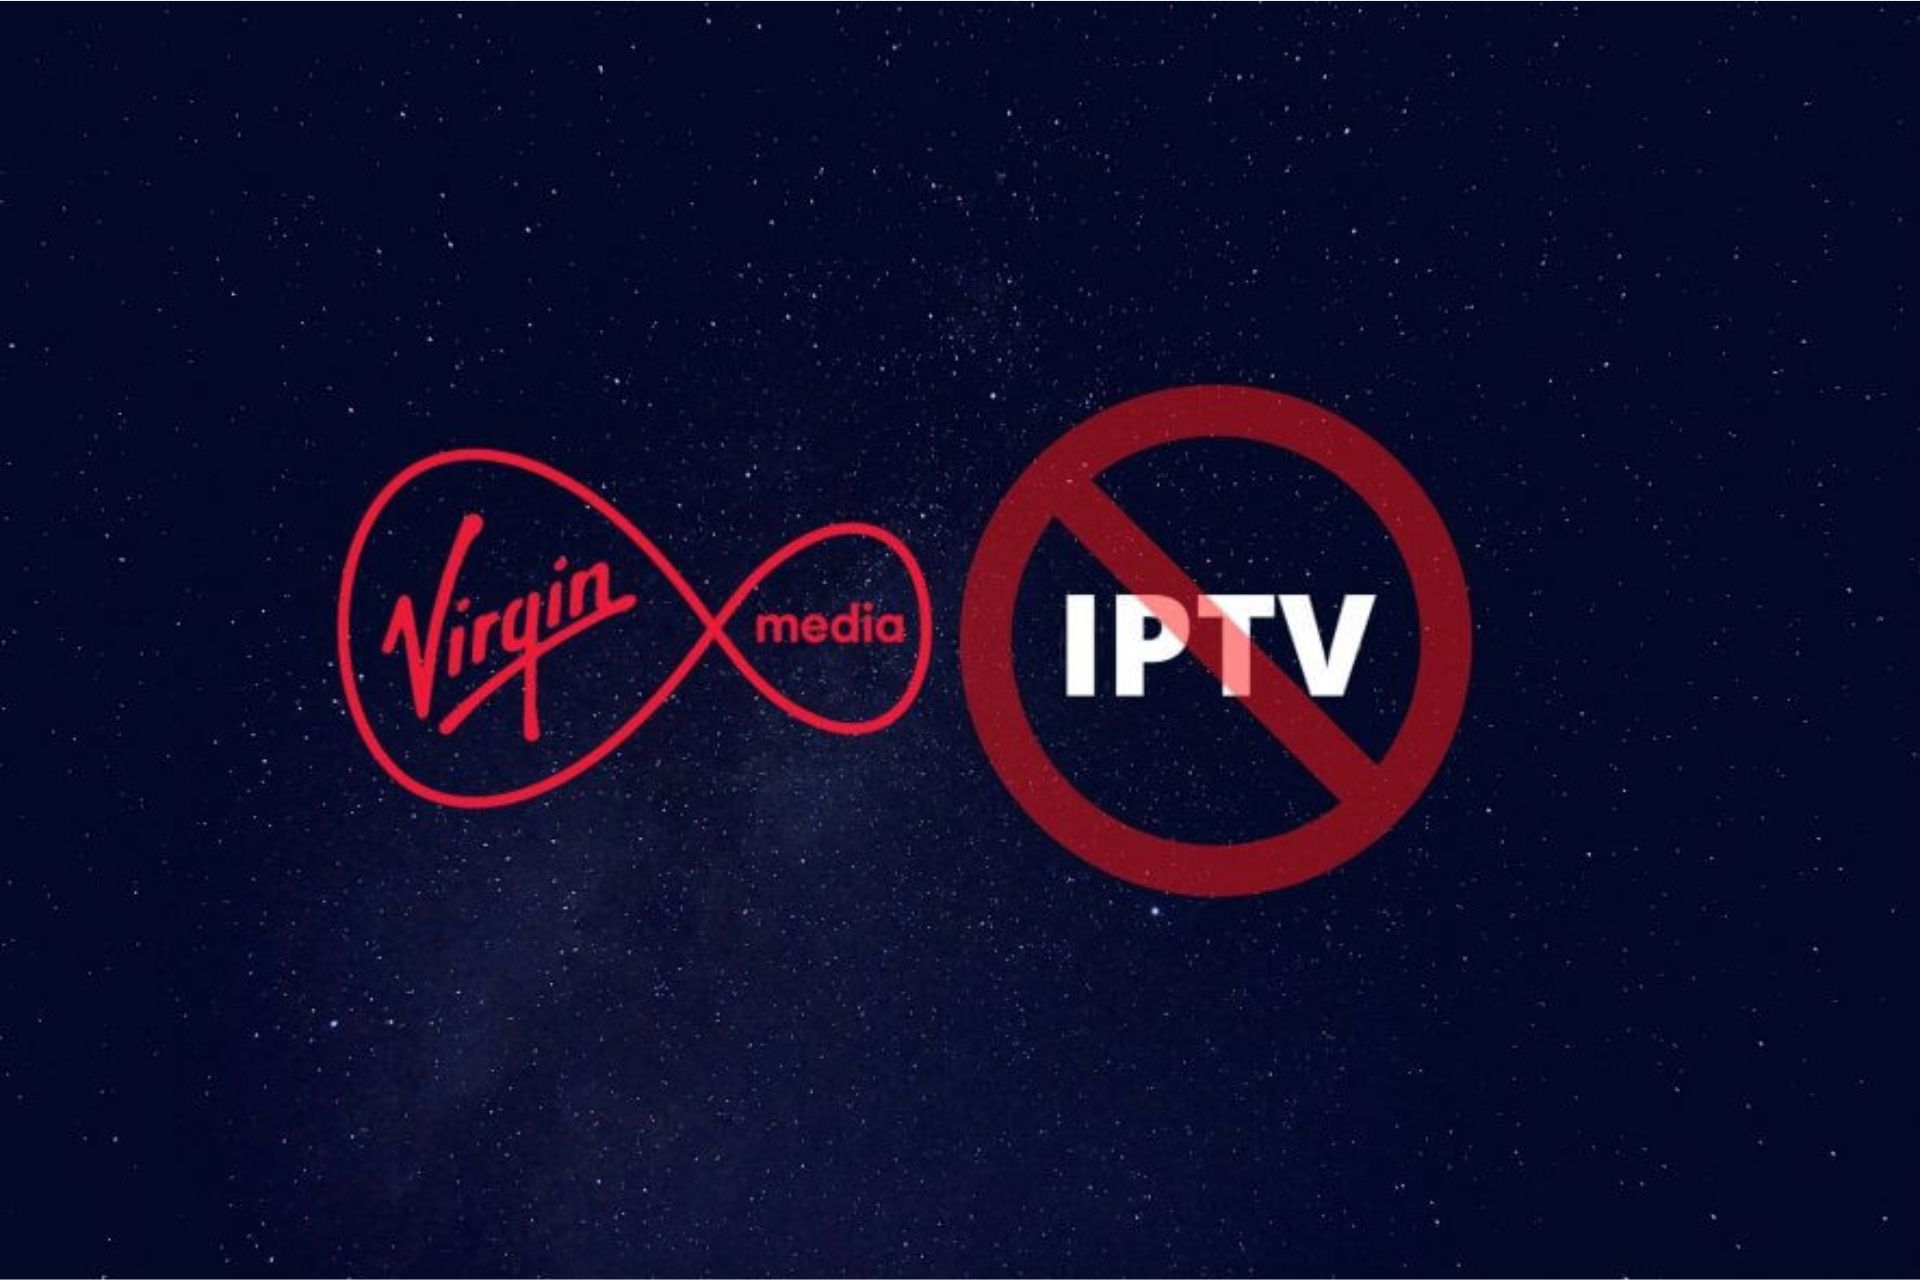 Virgin media IPTV